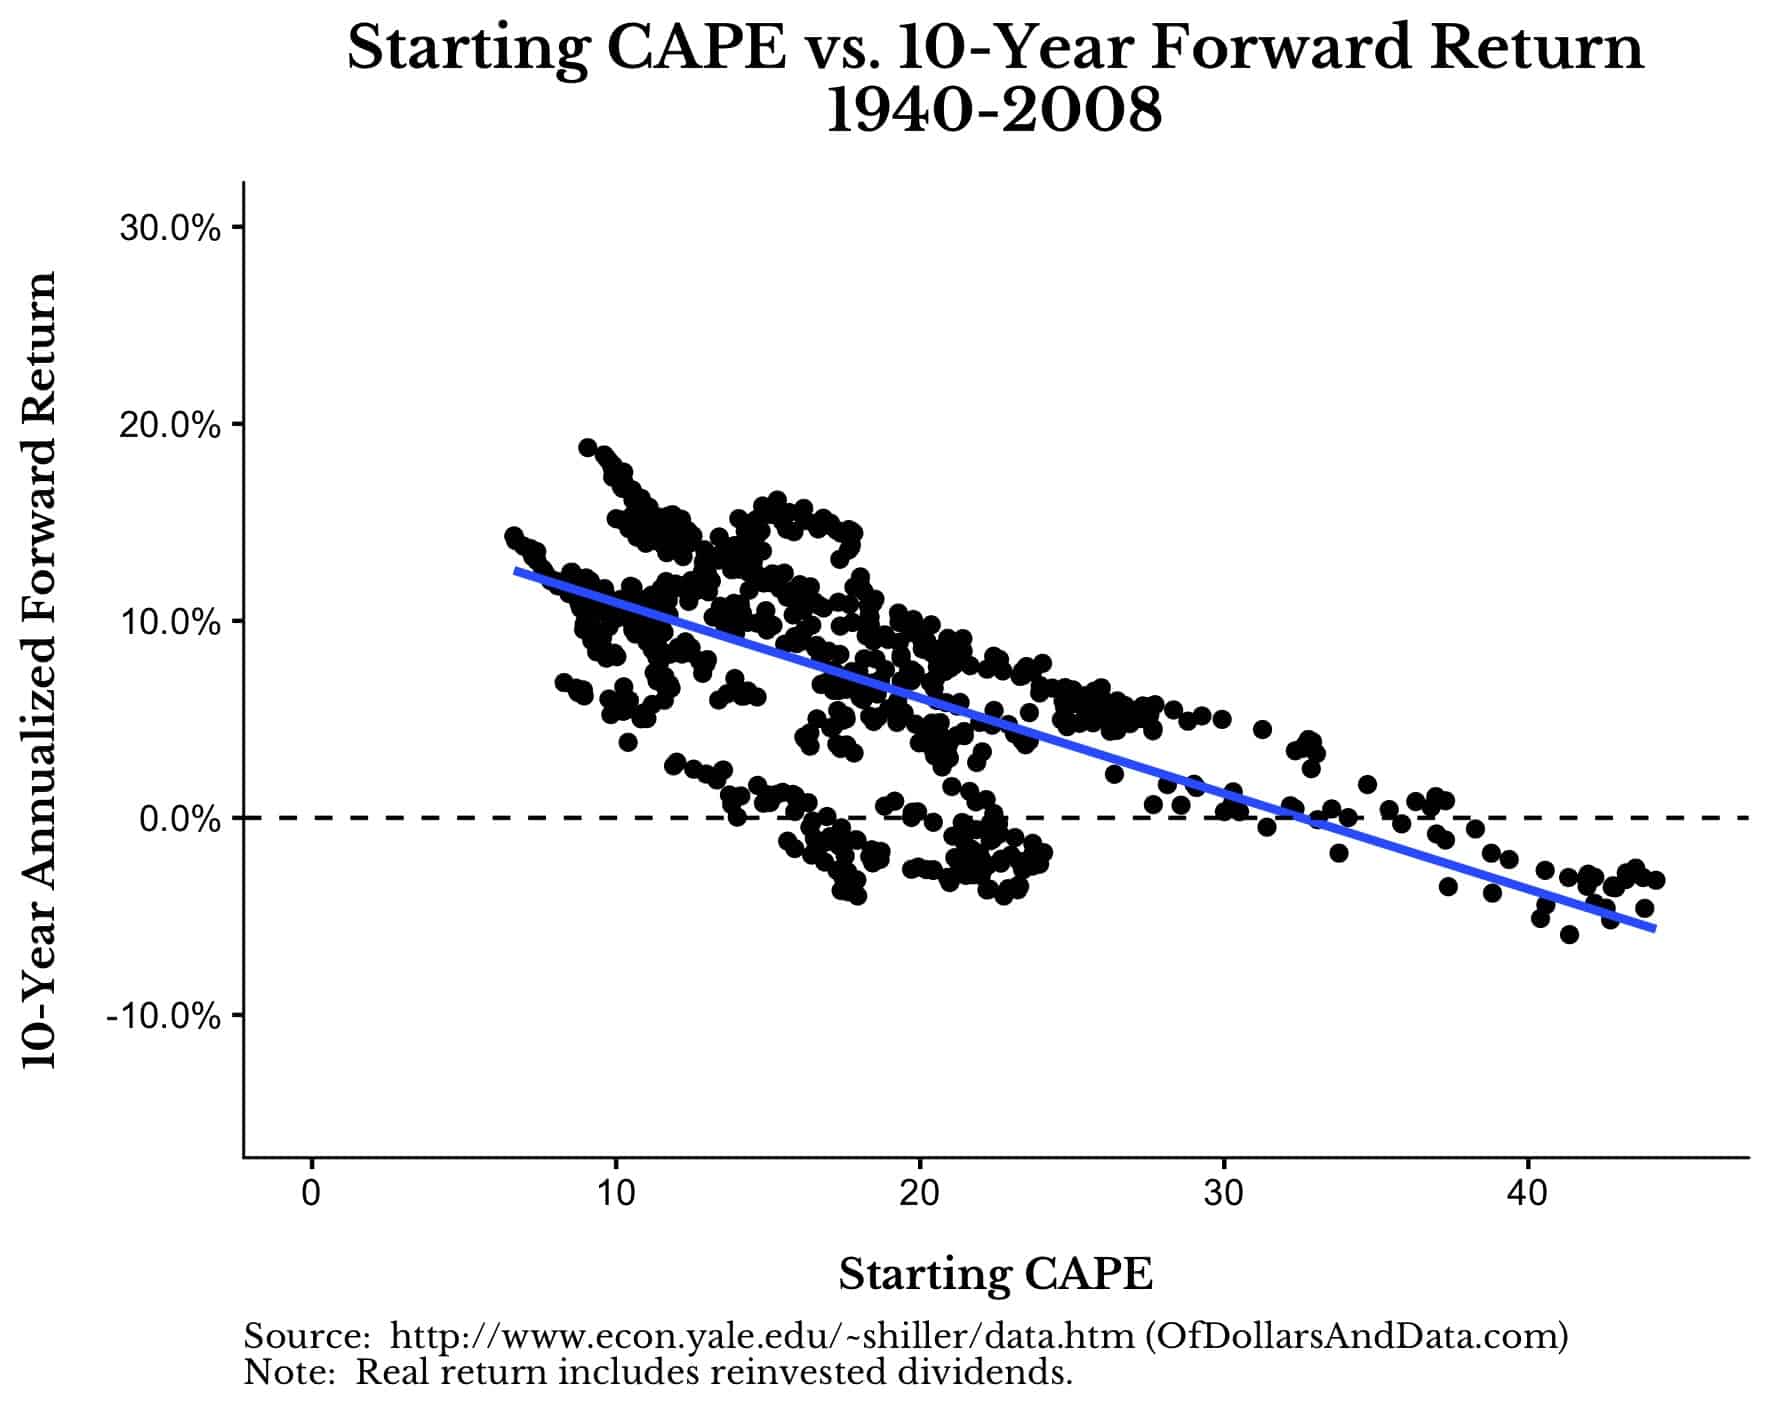 Starting CAPE vs 10-Year Forward Return for US Stocks, 1940-2018